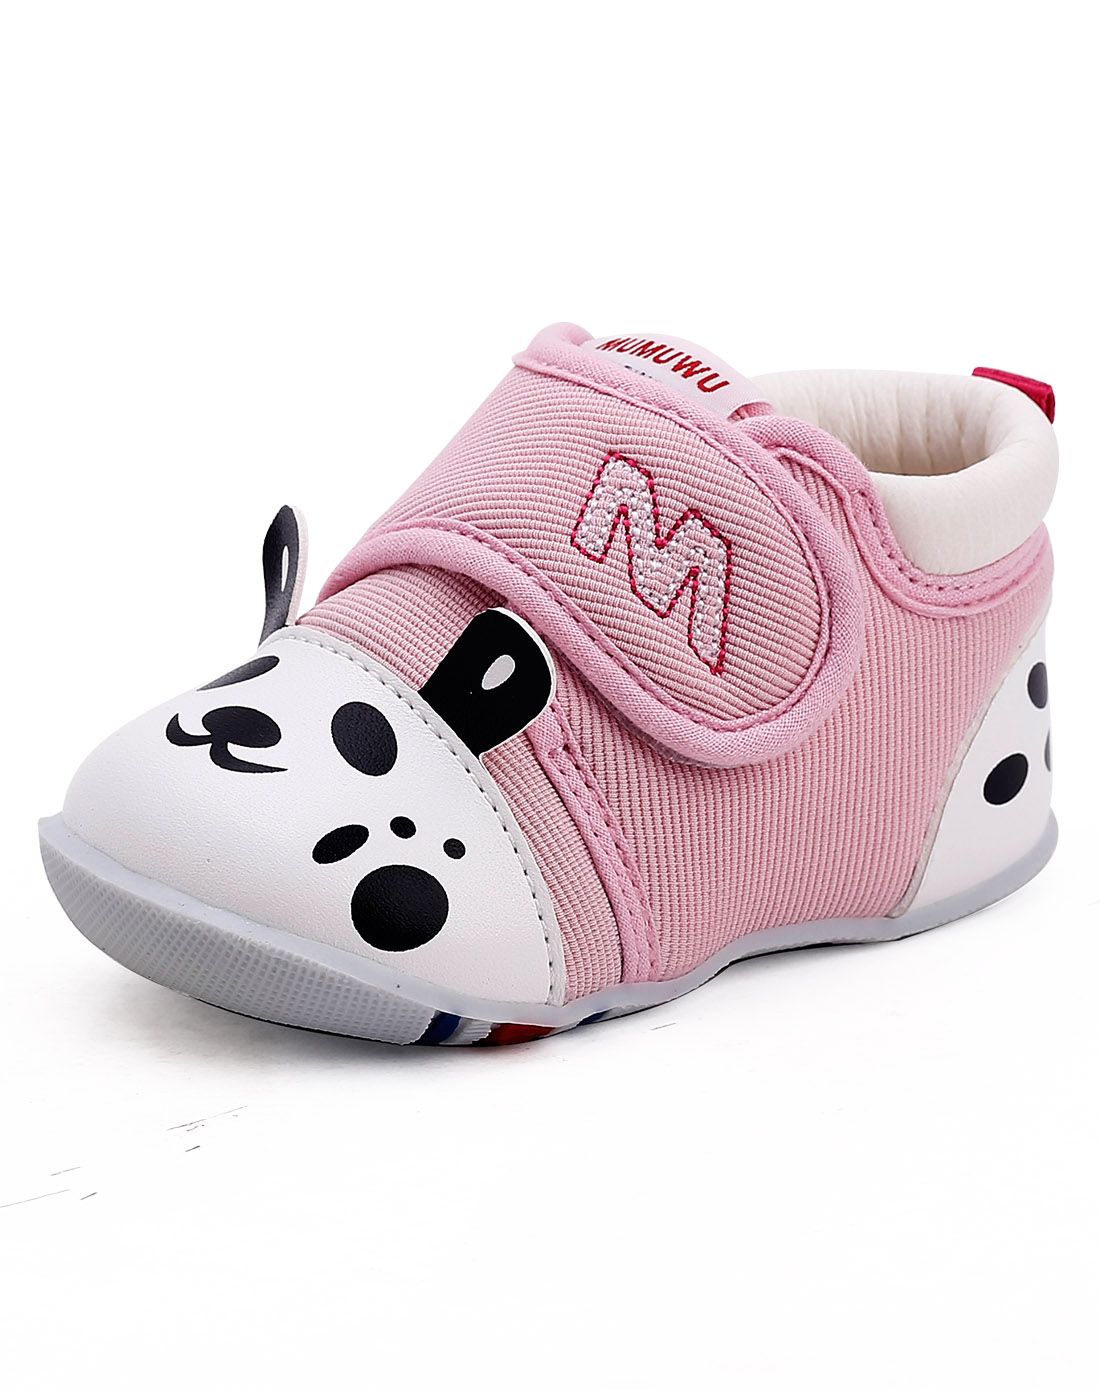 中性粉色卡通动漫婴儿鞋